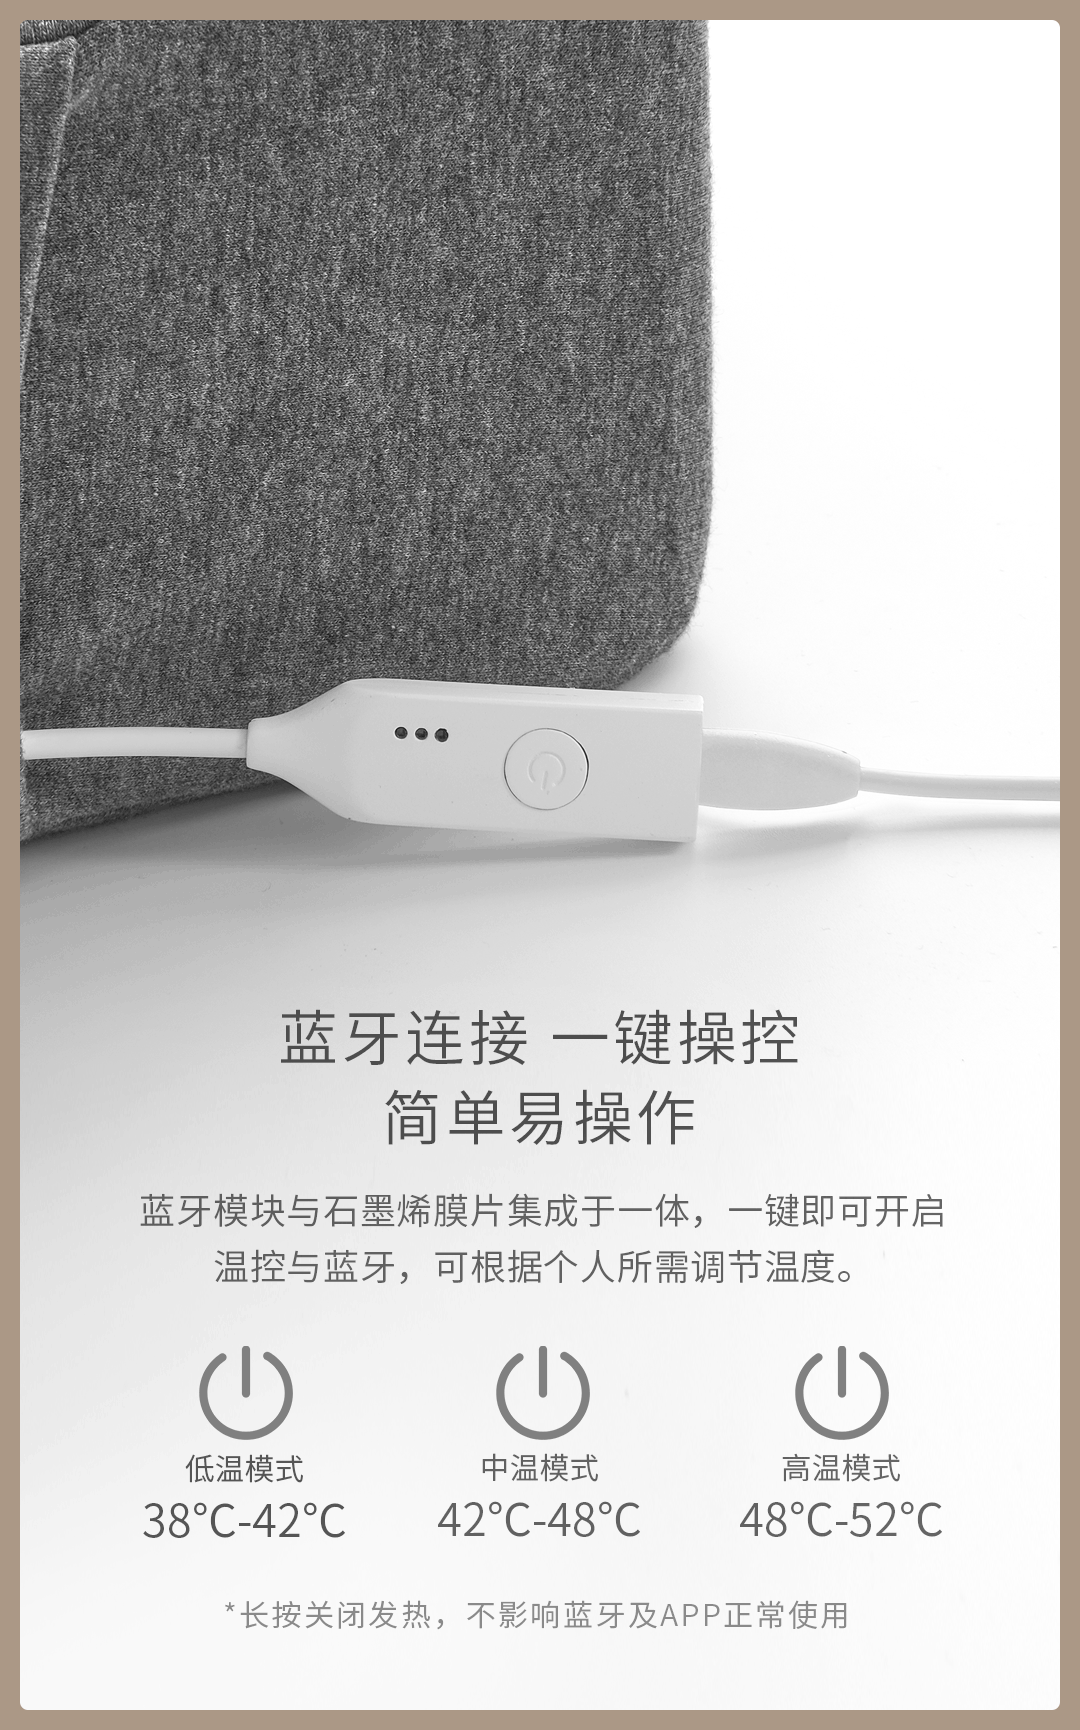 Xiaomi ra mắt gối thông minh: Tích hợp loa bluetooth, điều khiển nhiệt độ, theo dõi giấc ngủ, kiêm luôn đồng hồ báo thức, giá 1 triệu đồng - Ảnh 4.